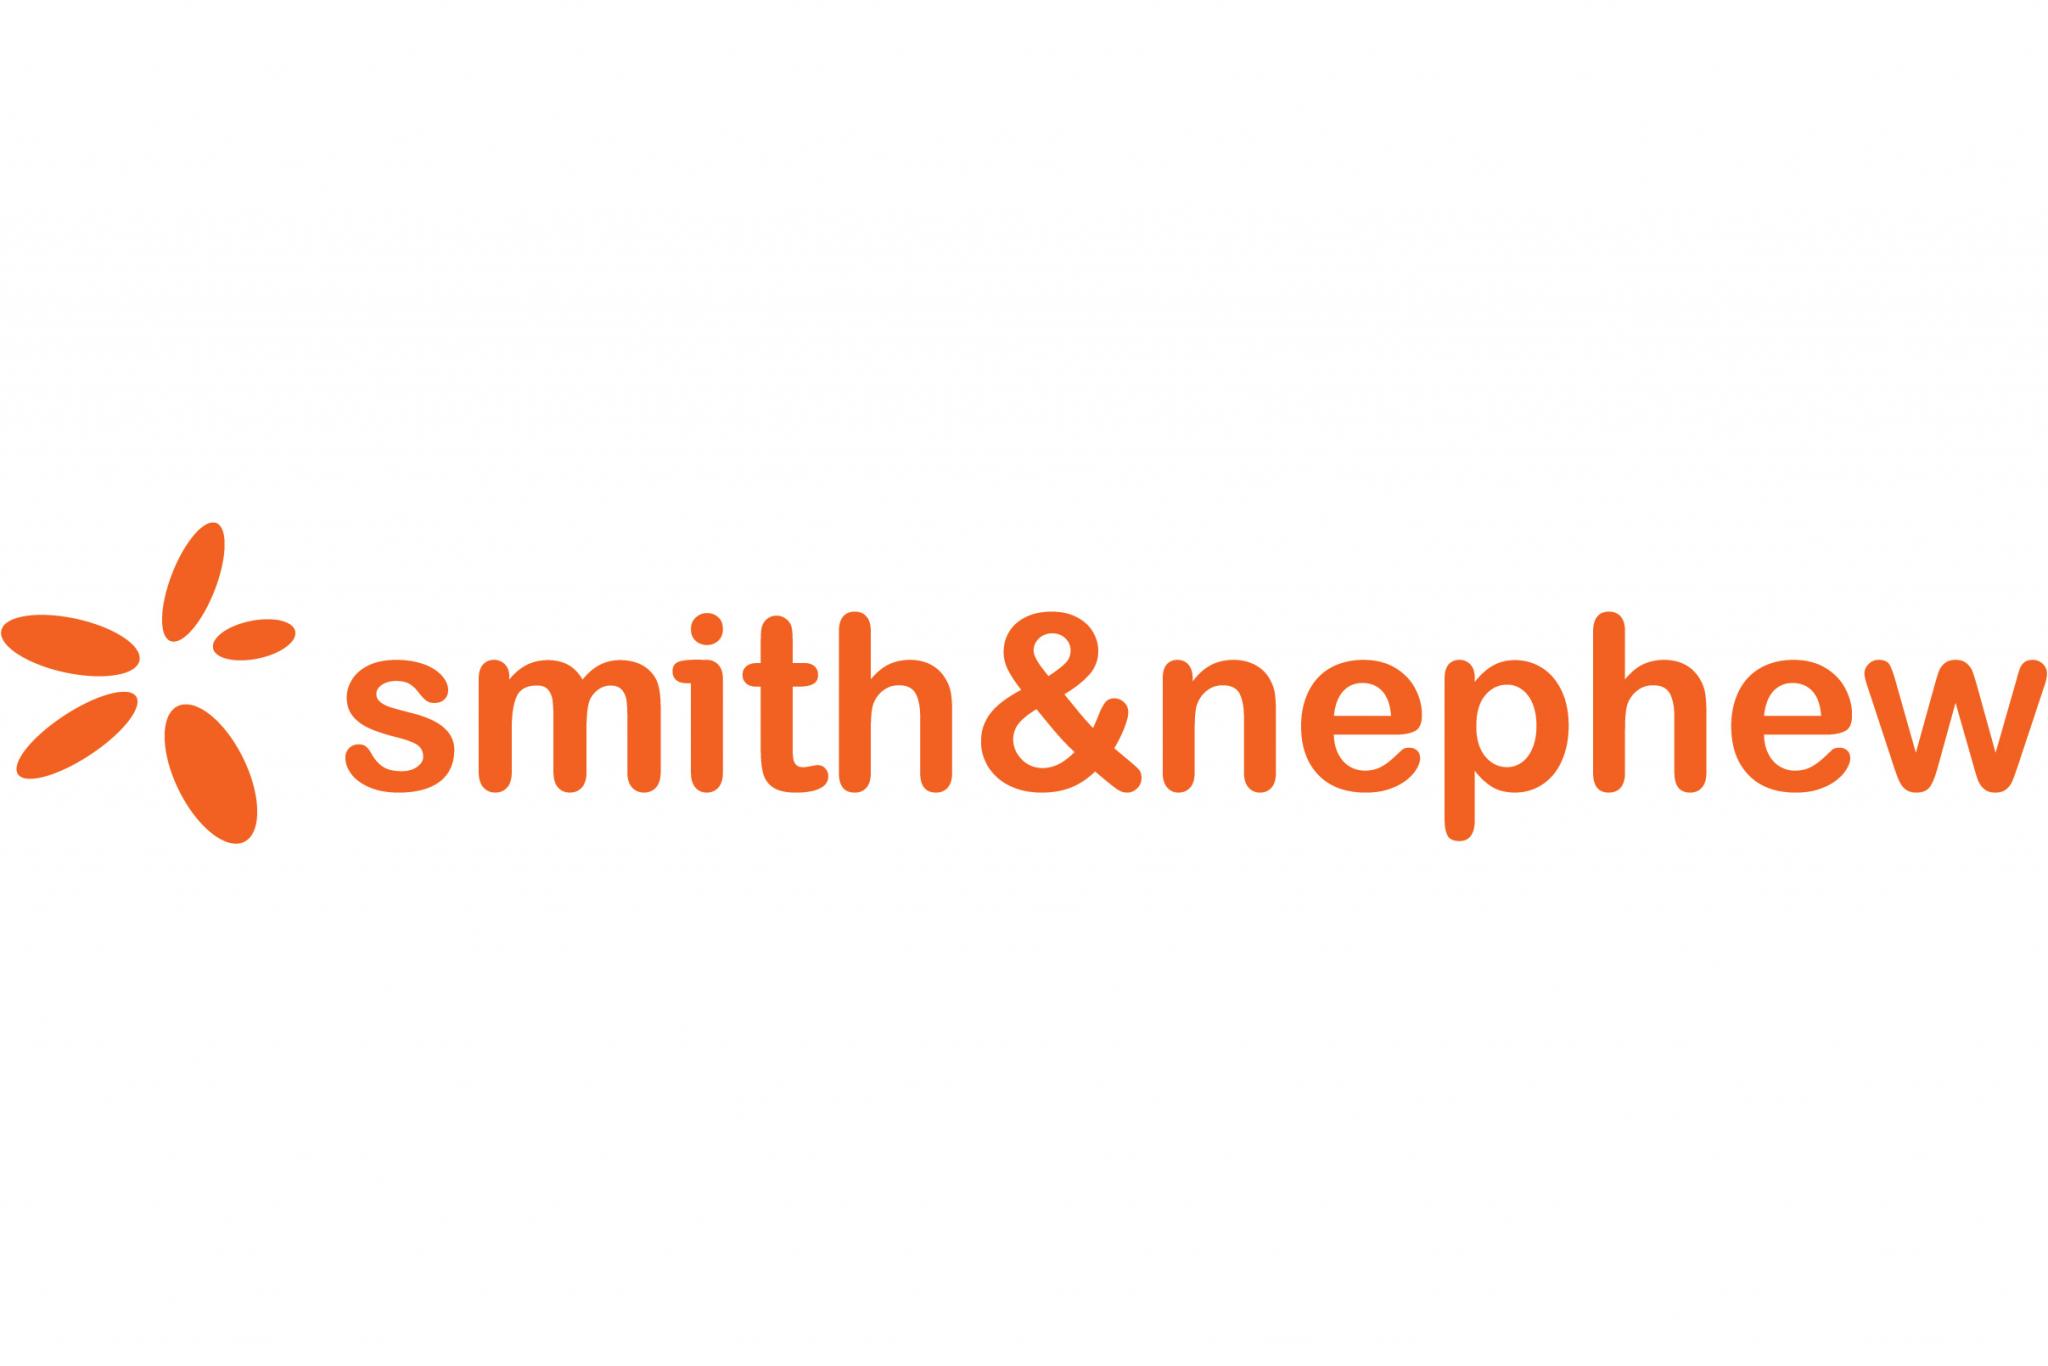 Will Smith & Nephew split up too?